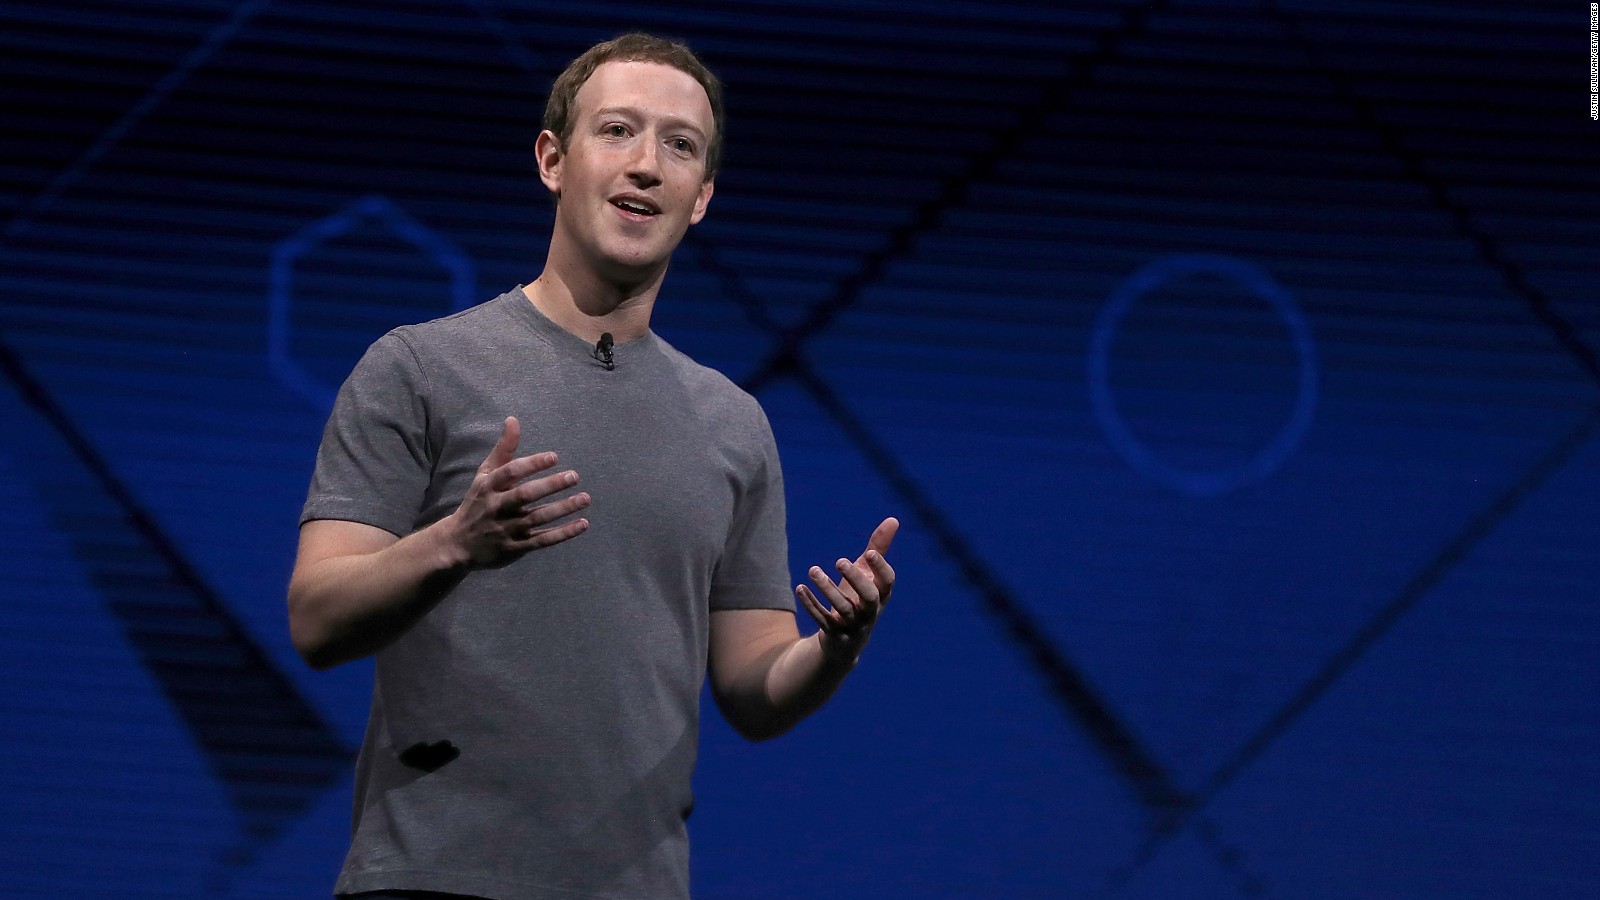 “O maior risco para um empreendedor é não arriscar”, diz Mark Zuckerberg, ele está realmente certo?